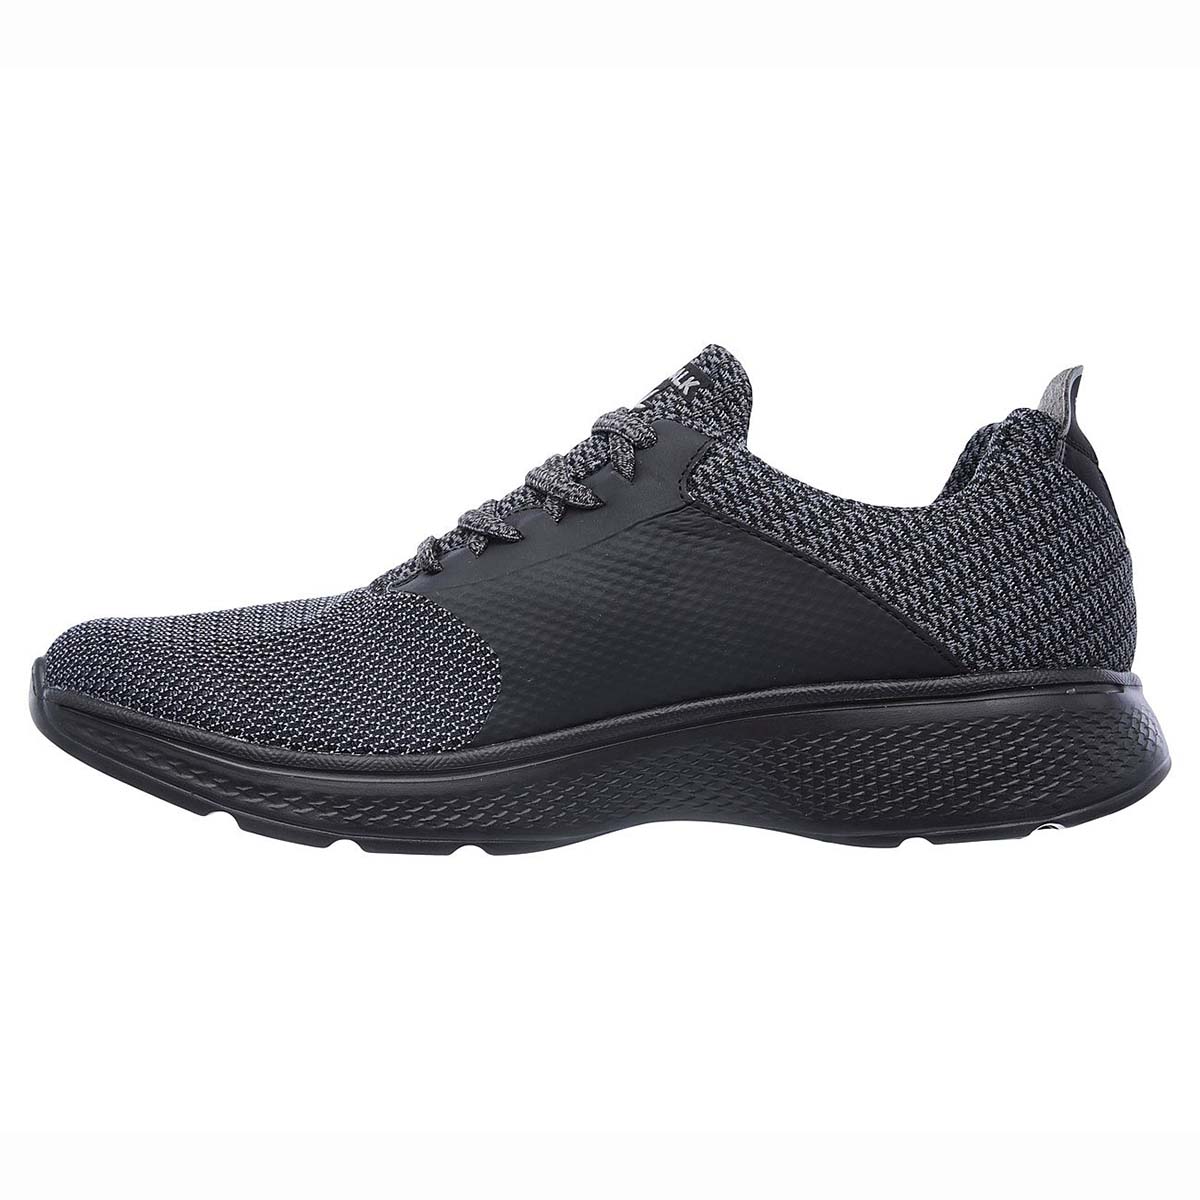 Buy Skechers Go Walk 4 Running Shoes (Black/Grey) Online